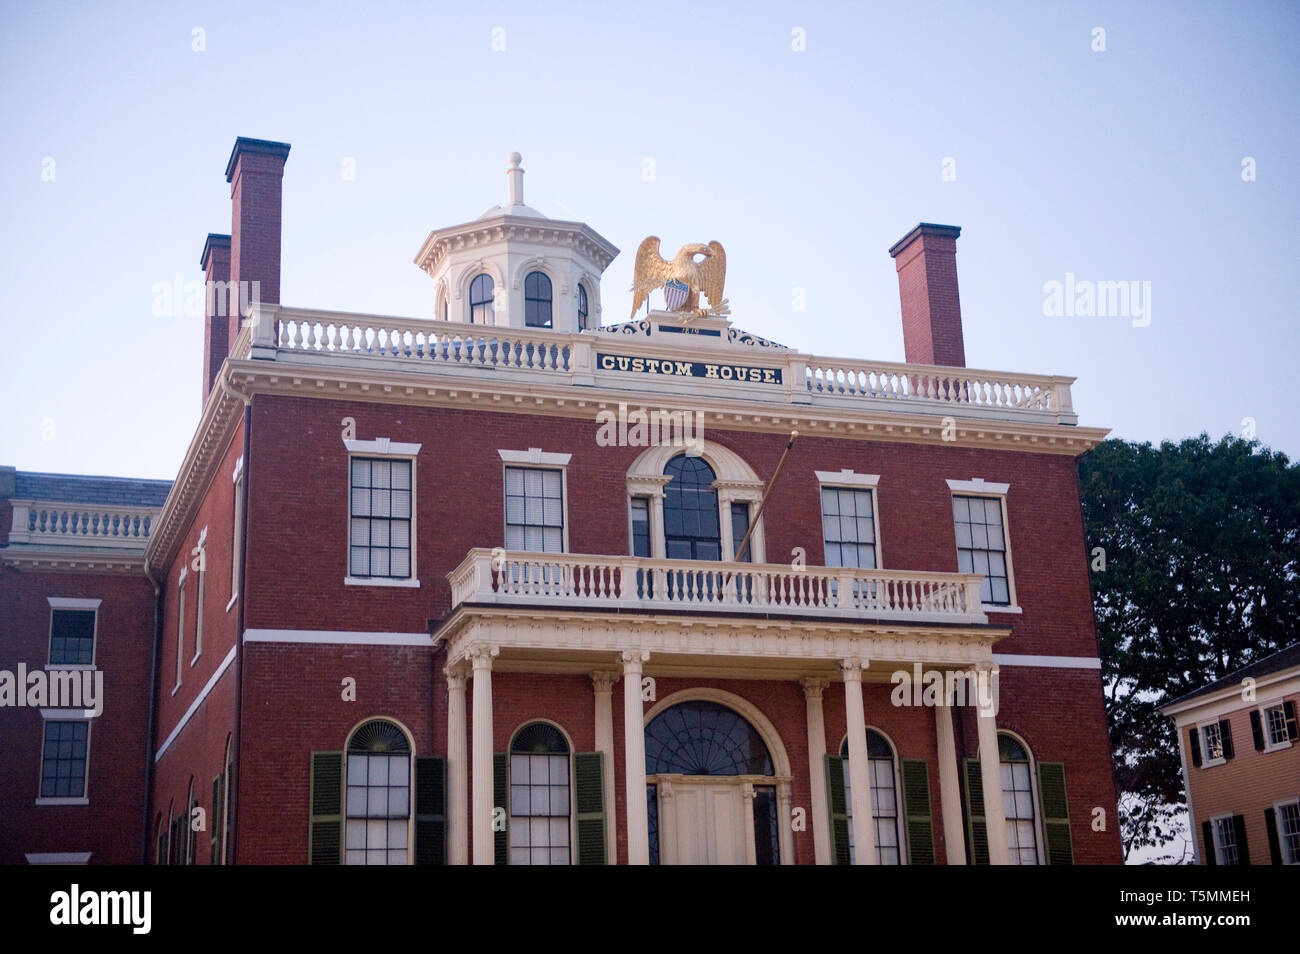 The Custom House in Salem Massachusetts Stock Photo